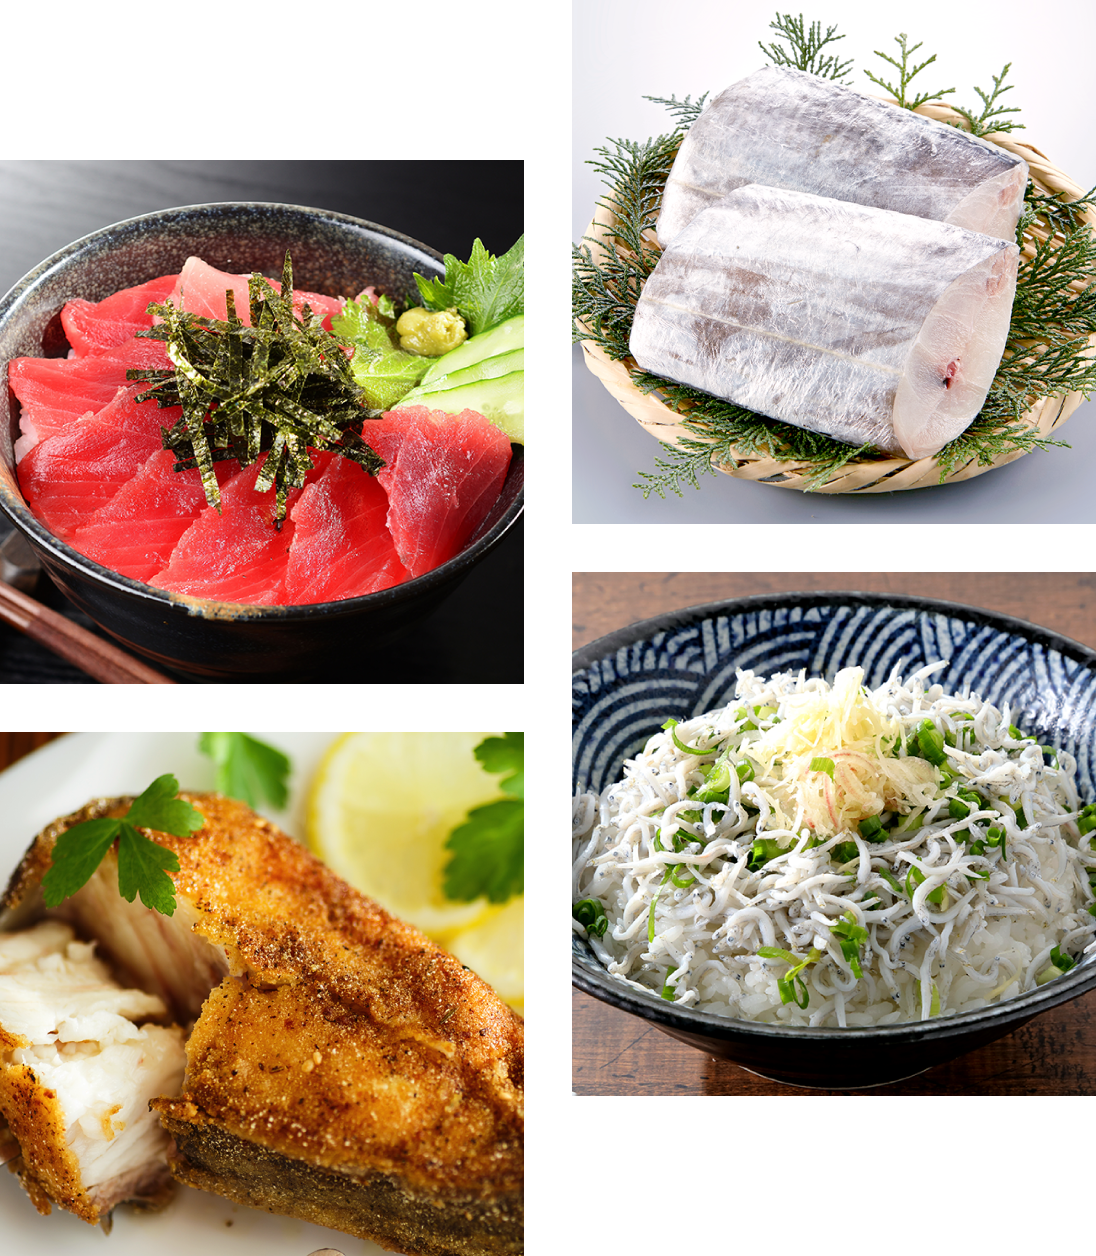 和歌山の魚を使った美味しそうな食事